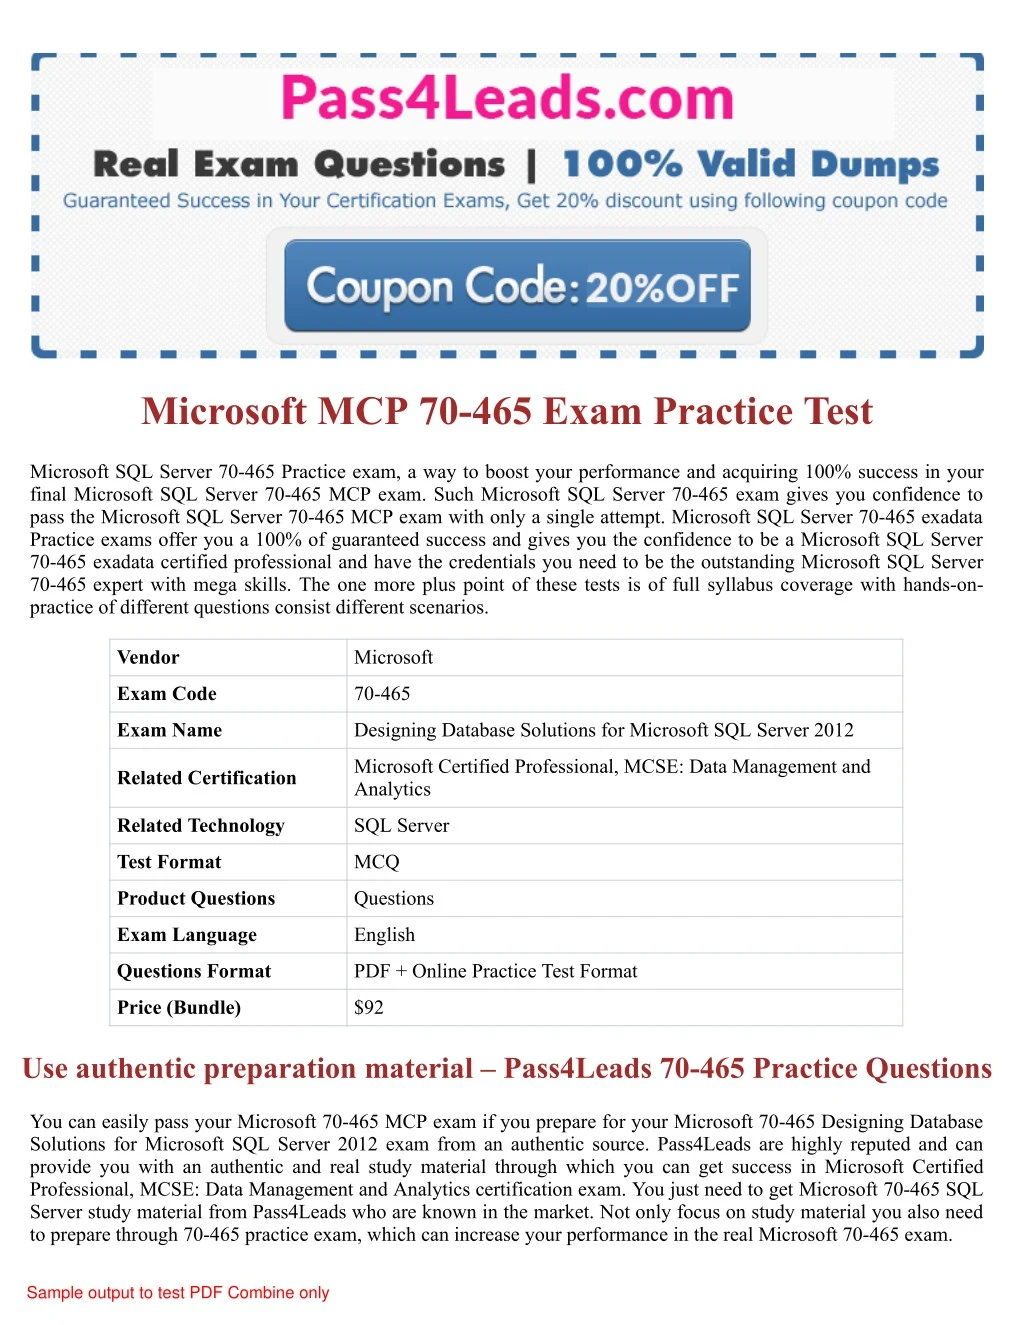 microsoft mcp 70 465 exam practice test